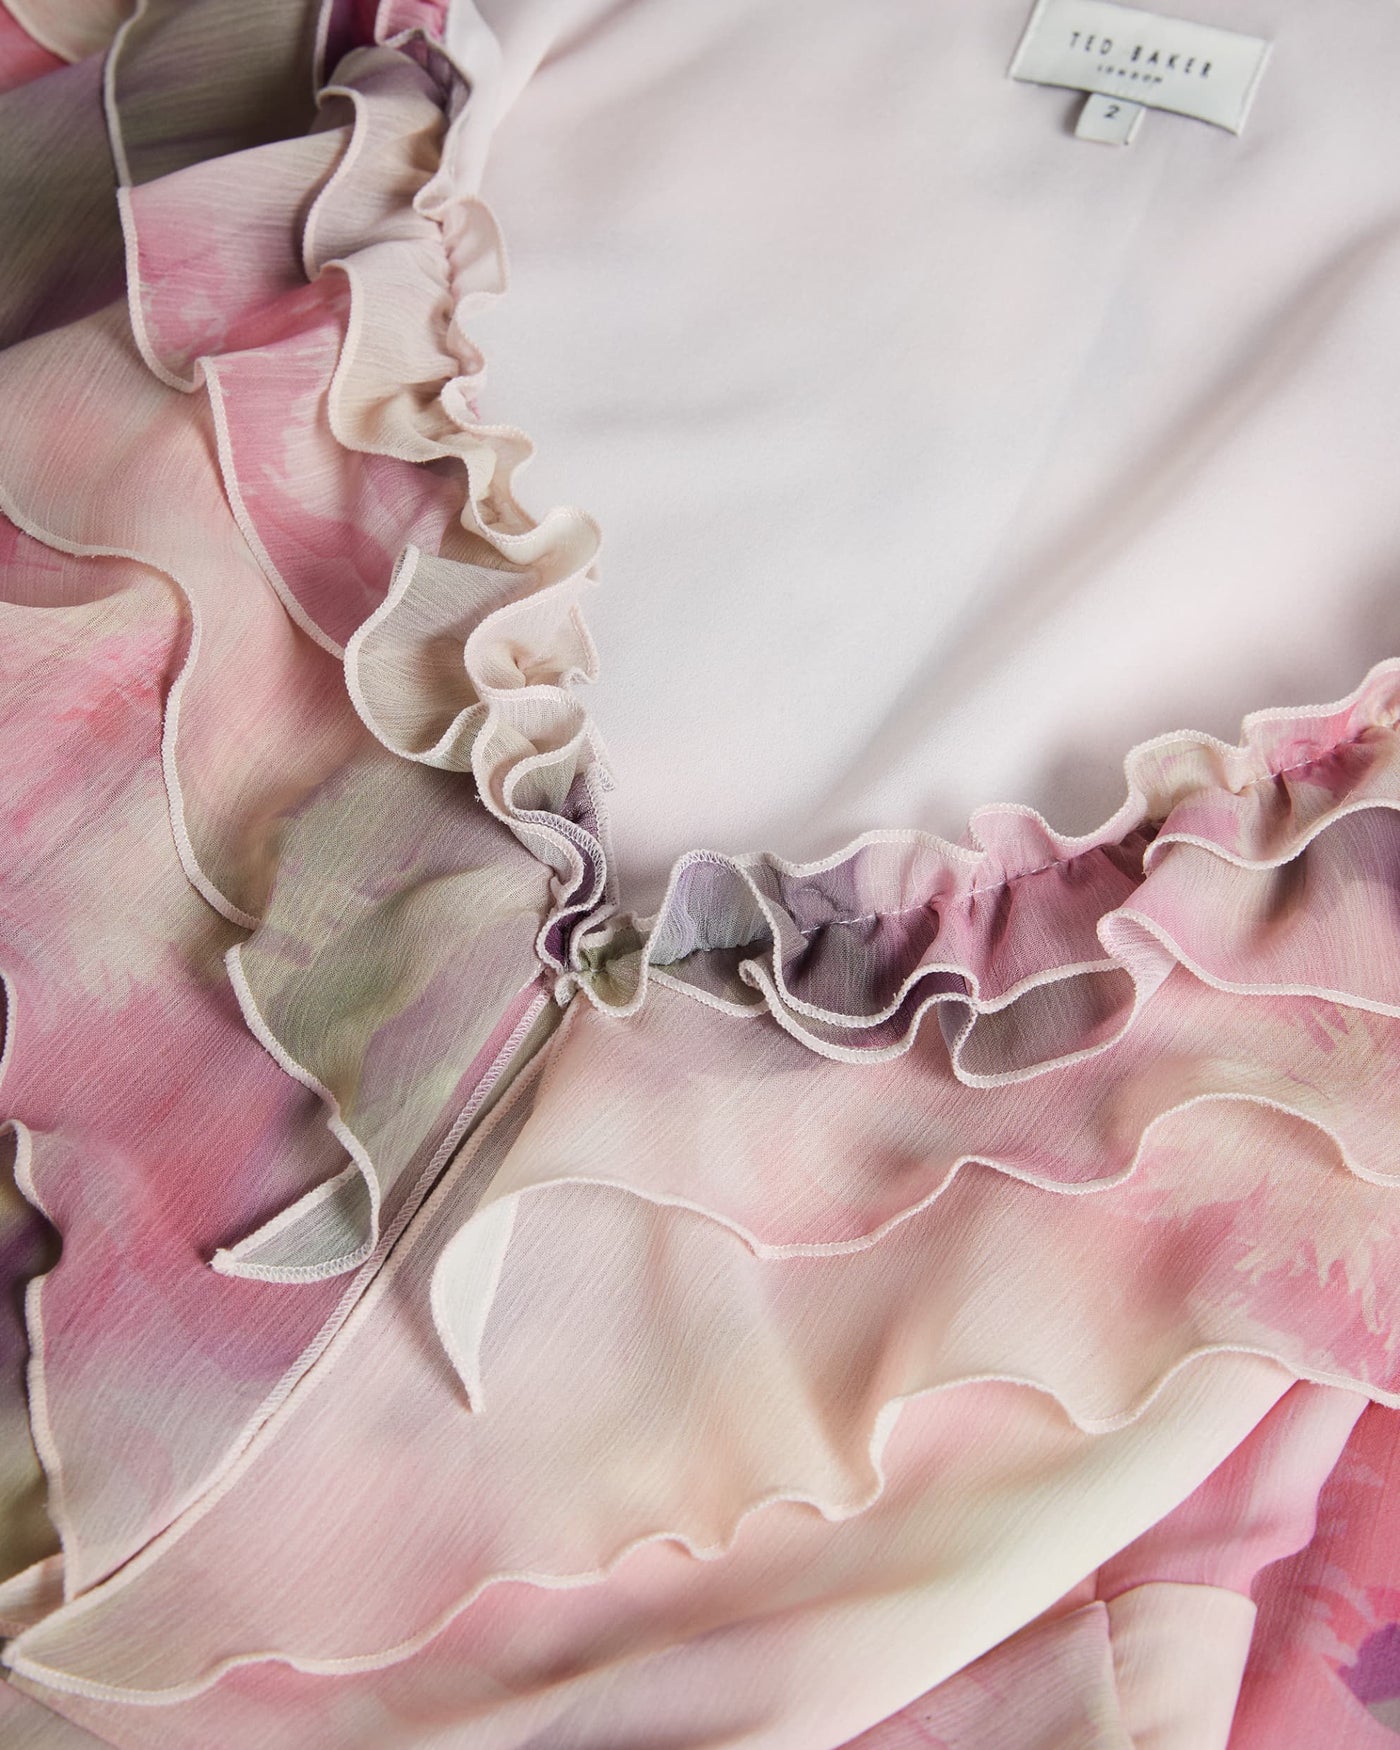 Ted Baker Karenie Frilled Floral Maxi Dress | Coral